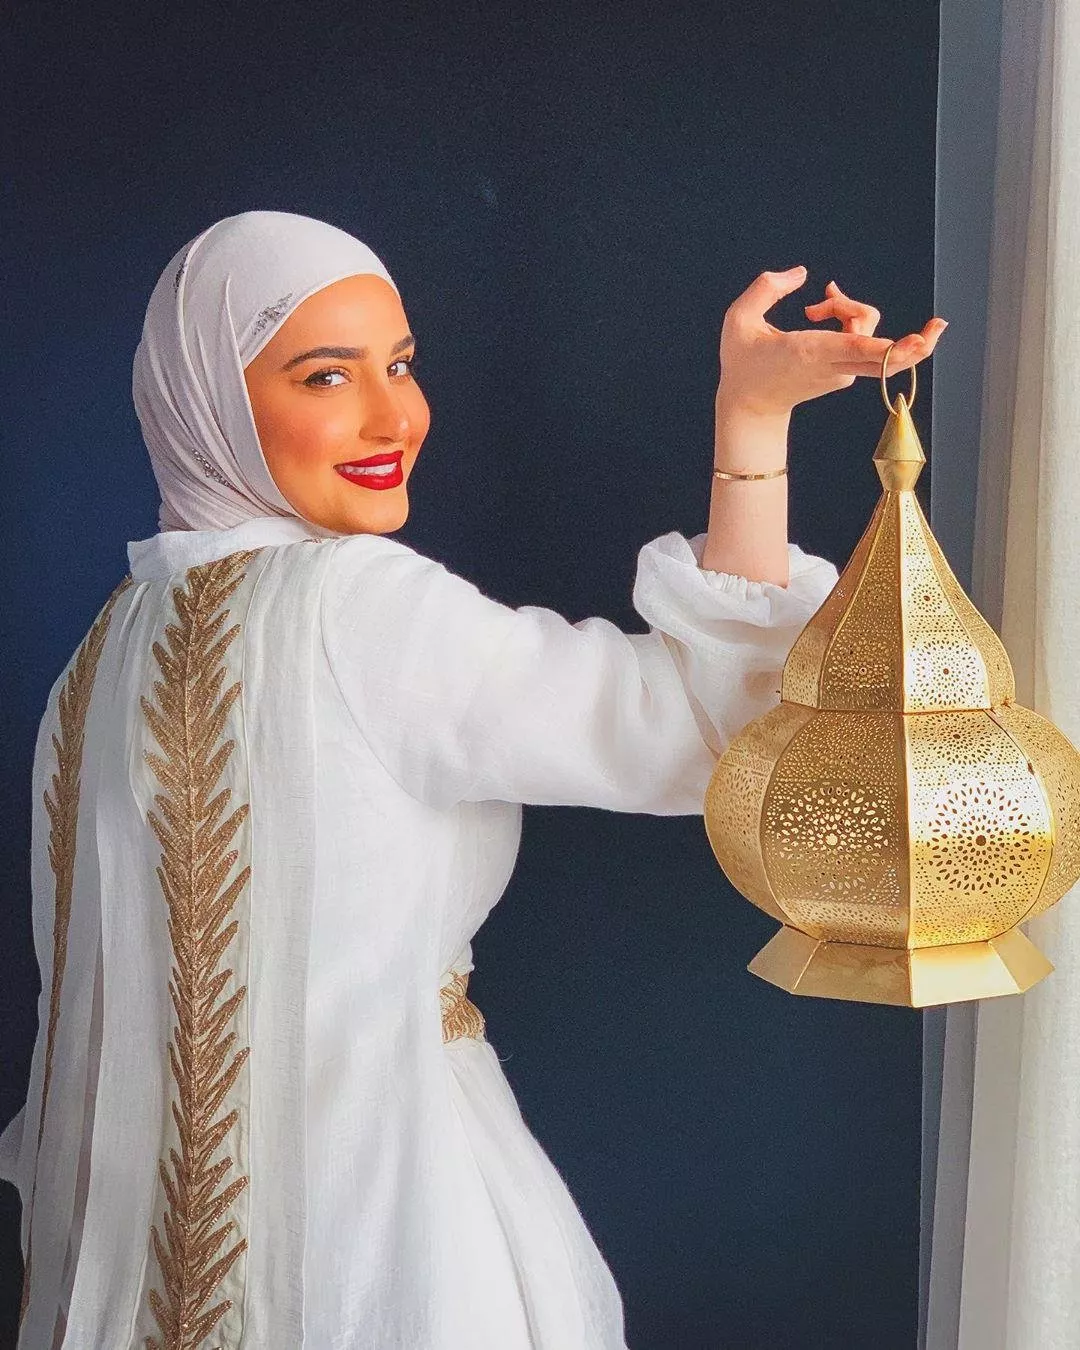 موديلات عبايات مستوحاة من النجمات والفاشينيستا لإطلالة أنيقة في رمضان 2020